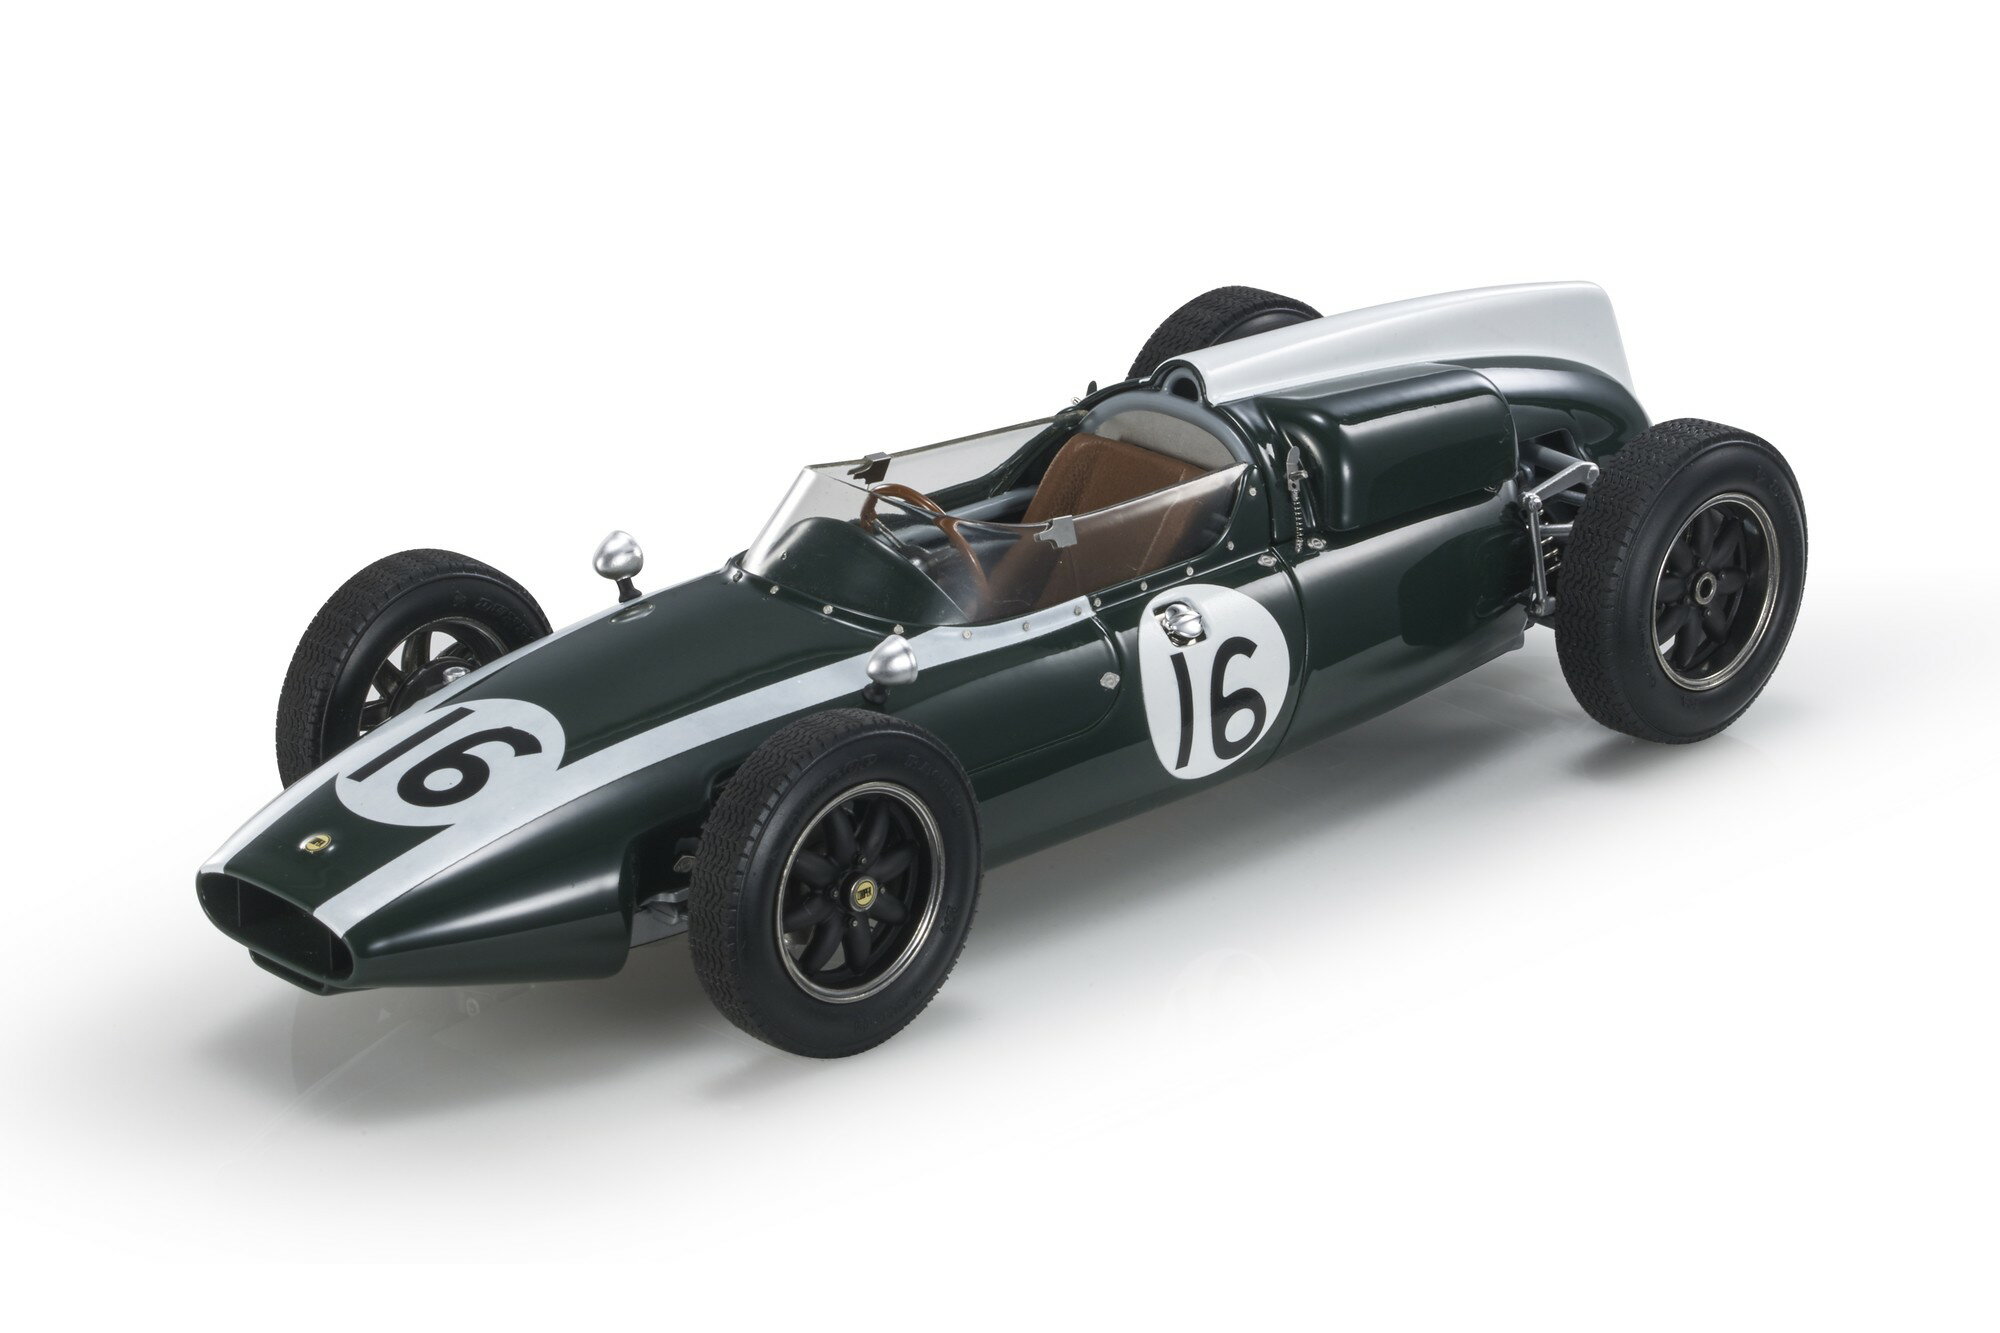 GP Replicas 1/18 ミニカー レジン プロポーションモデル 1960年フランスGP ポールポジション Fastest Lap クーパー COOPER - F1 T53 No.16 POLE POSITION FASTEST LAP WINNER FRENCH GP WORLD CHAMPION 1960 JACK BRABHAM